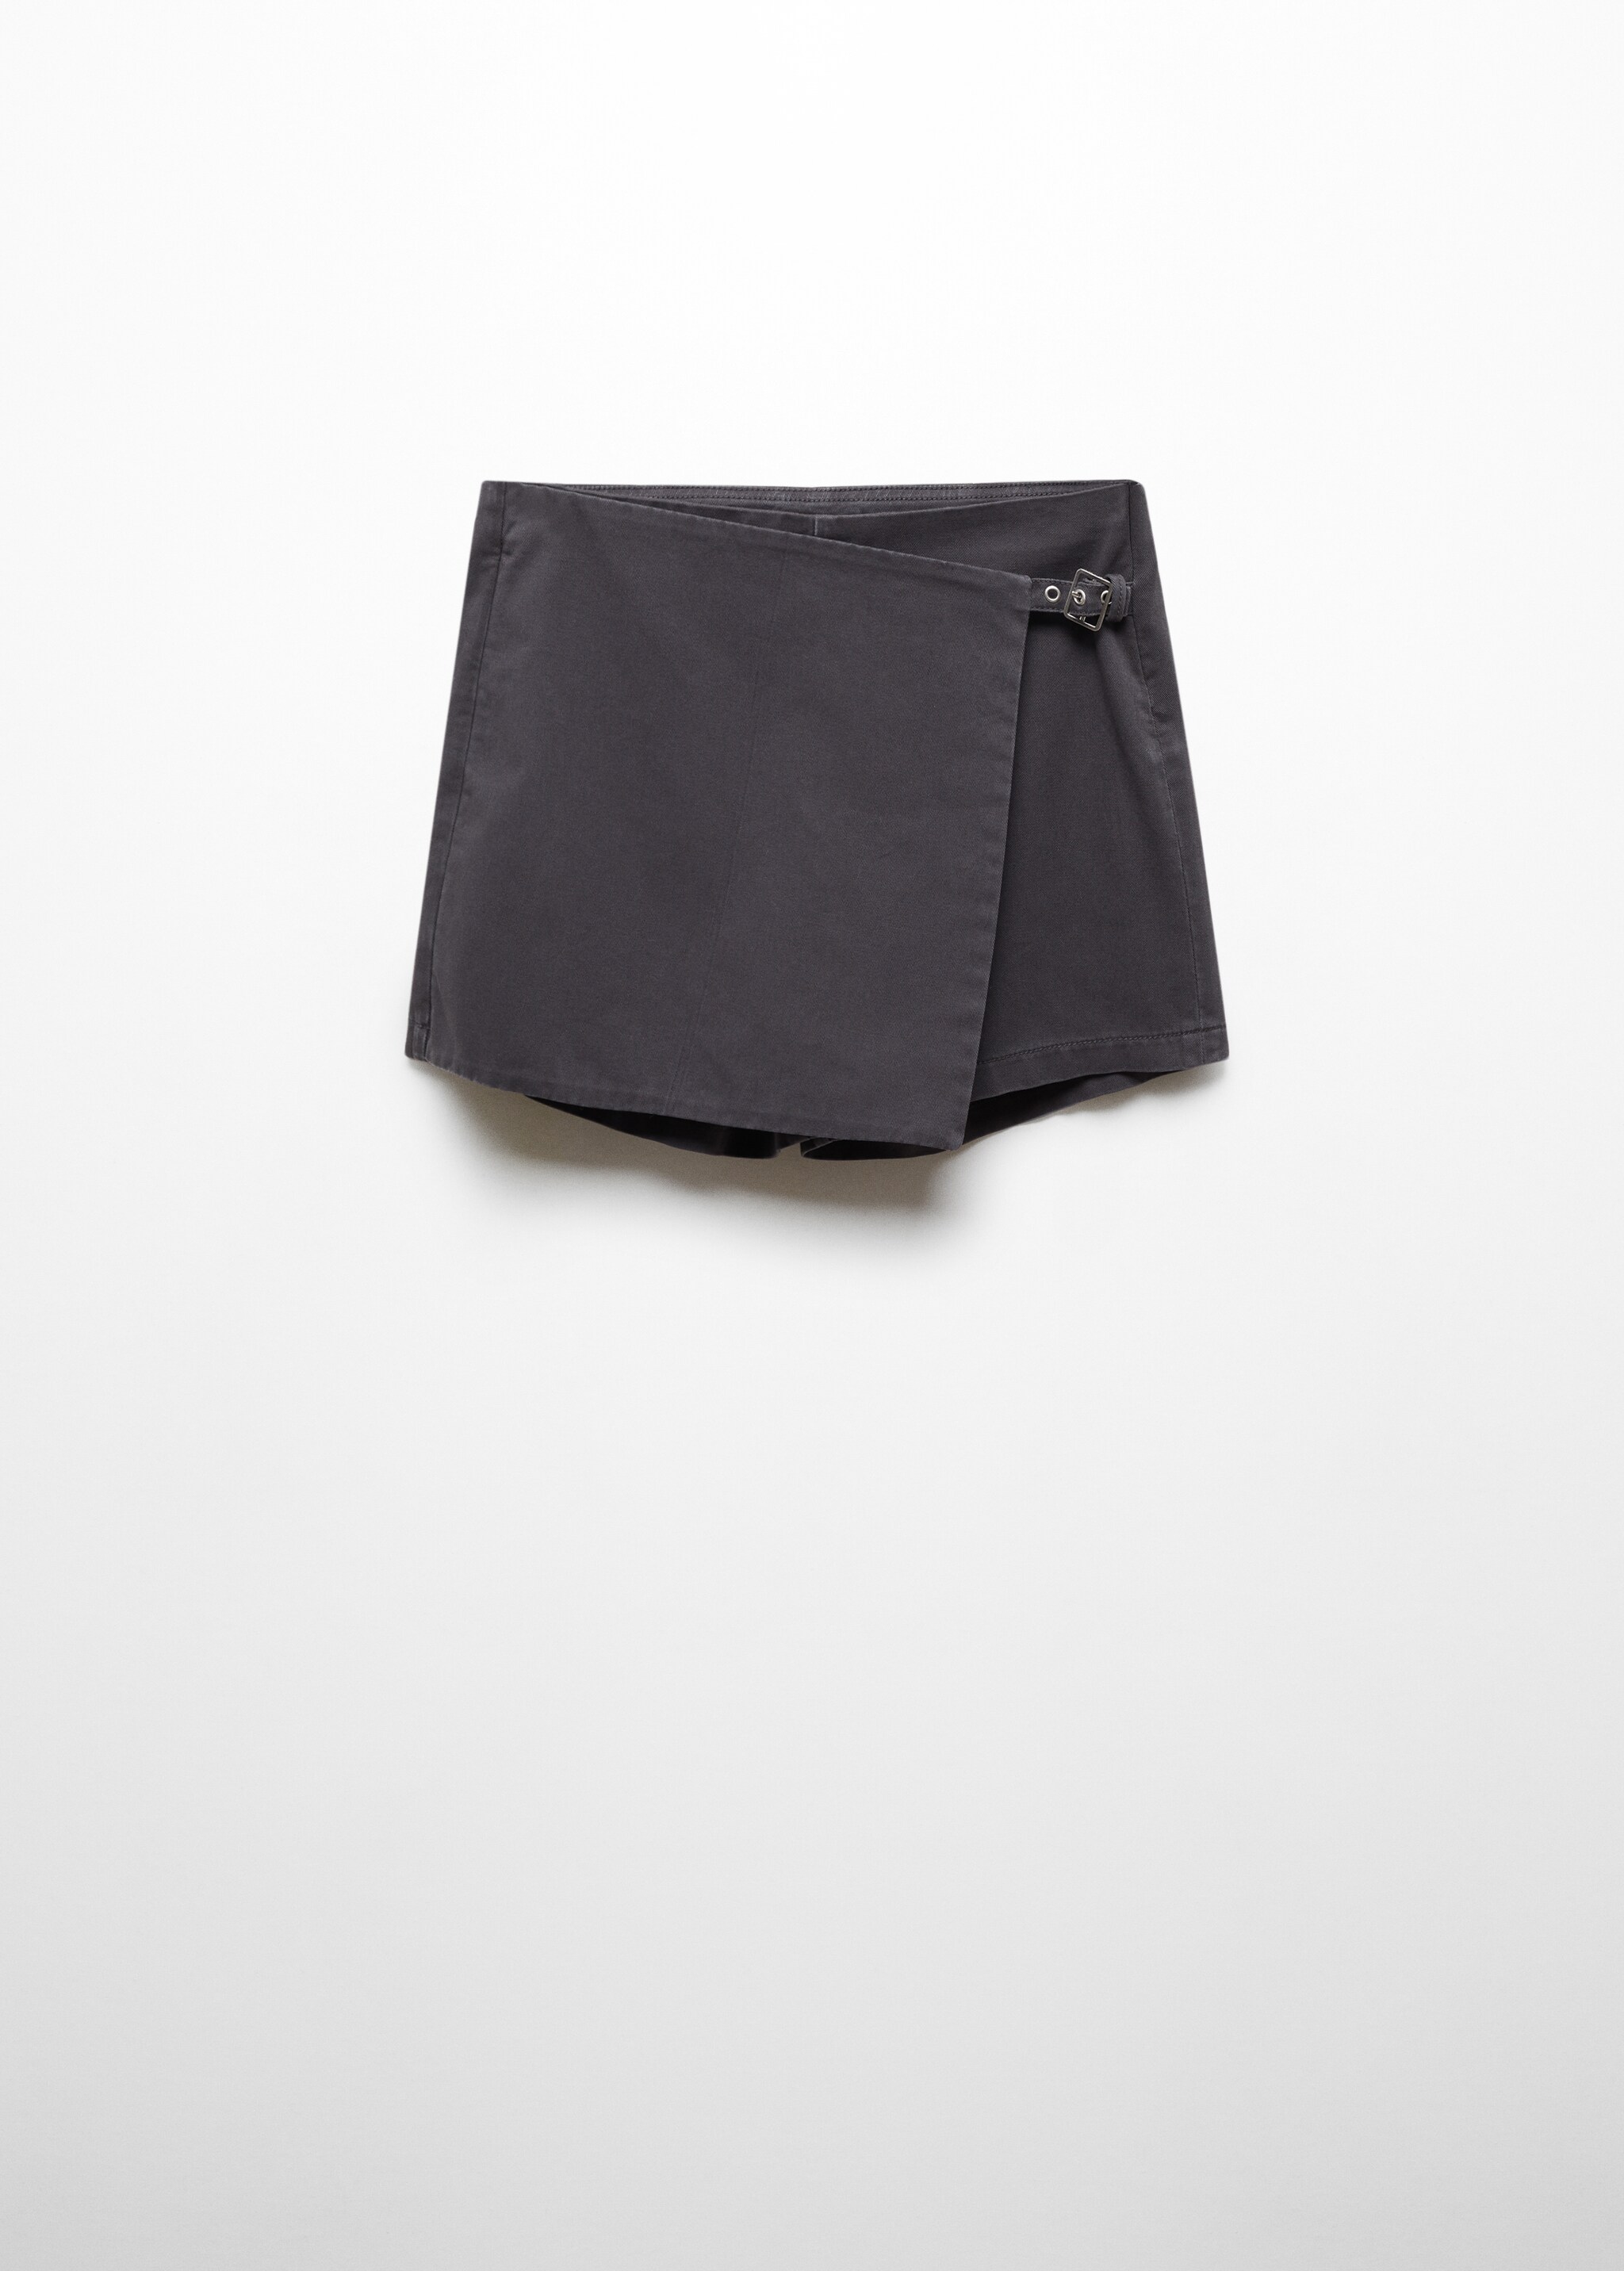 Falda pantalón hebilla - Artículo sin modelo